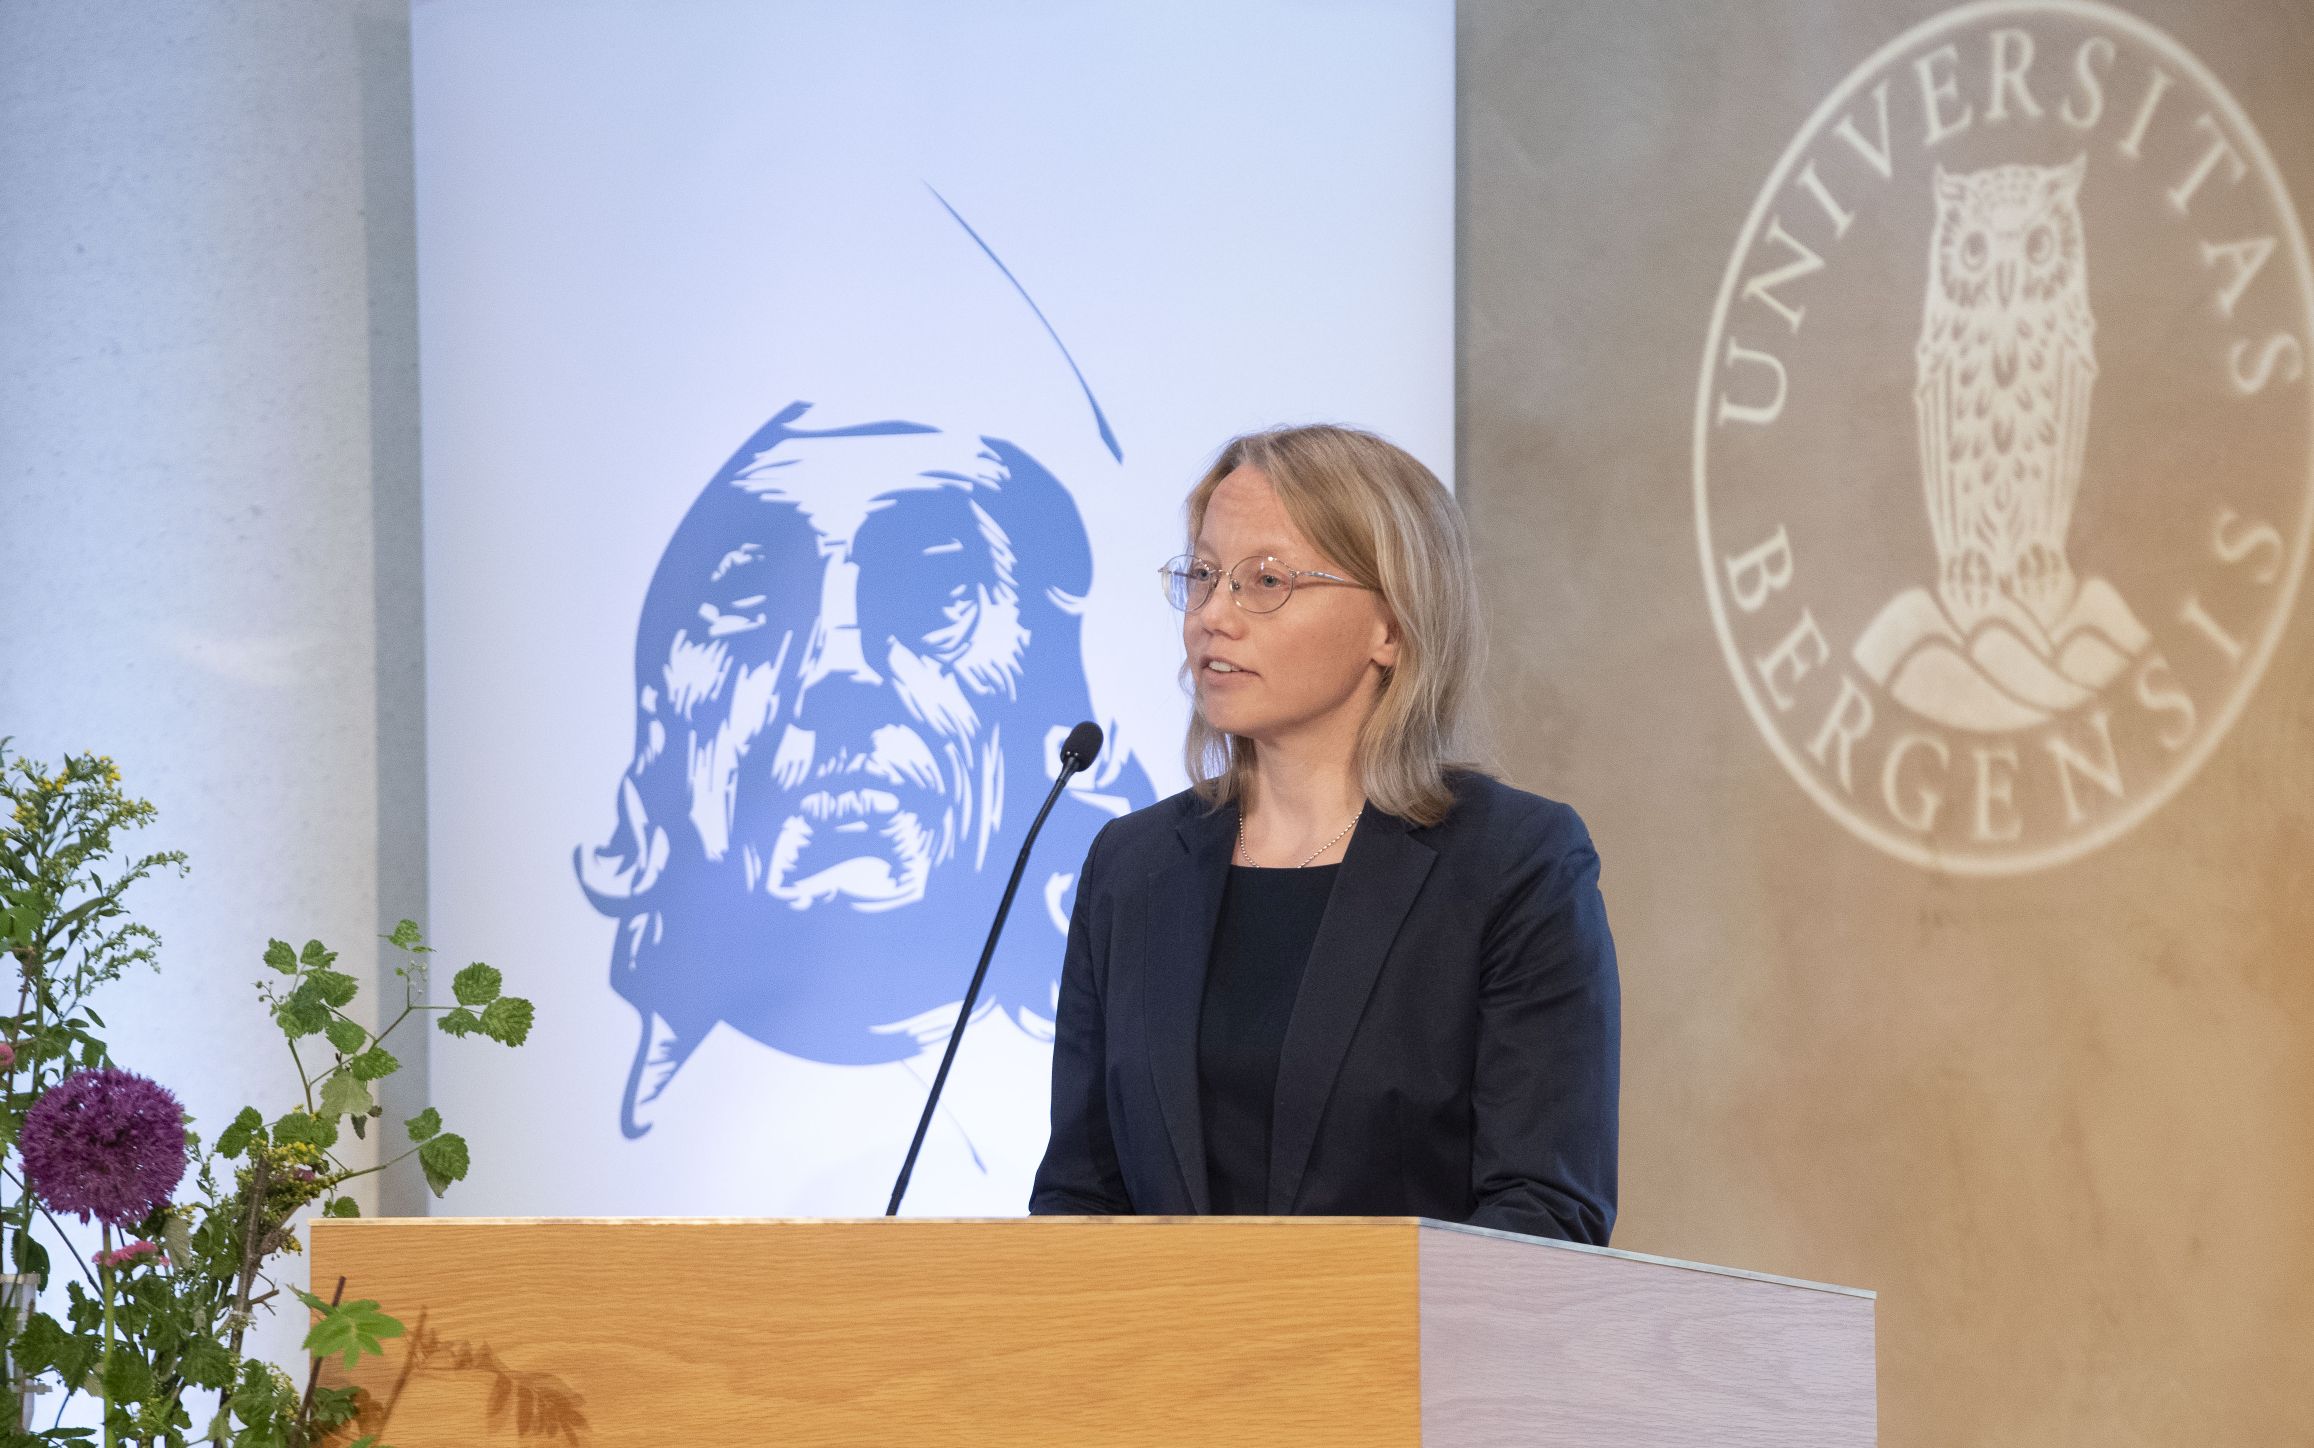 Nils Klim Laureate Elisa Uusimäki delivers her Acceptance Speech. (Photo: Thor Brødreskift.)